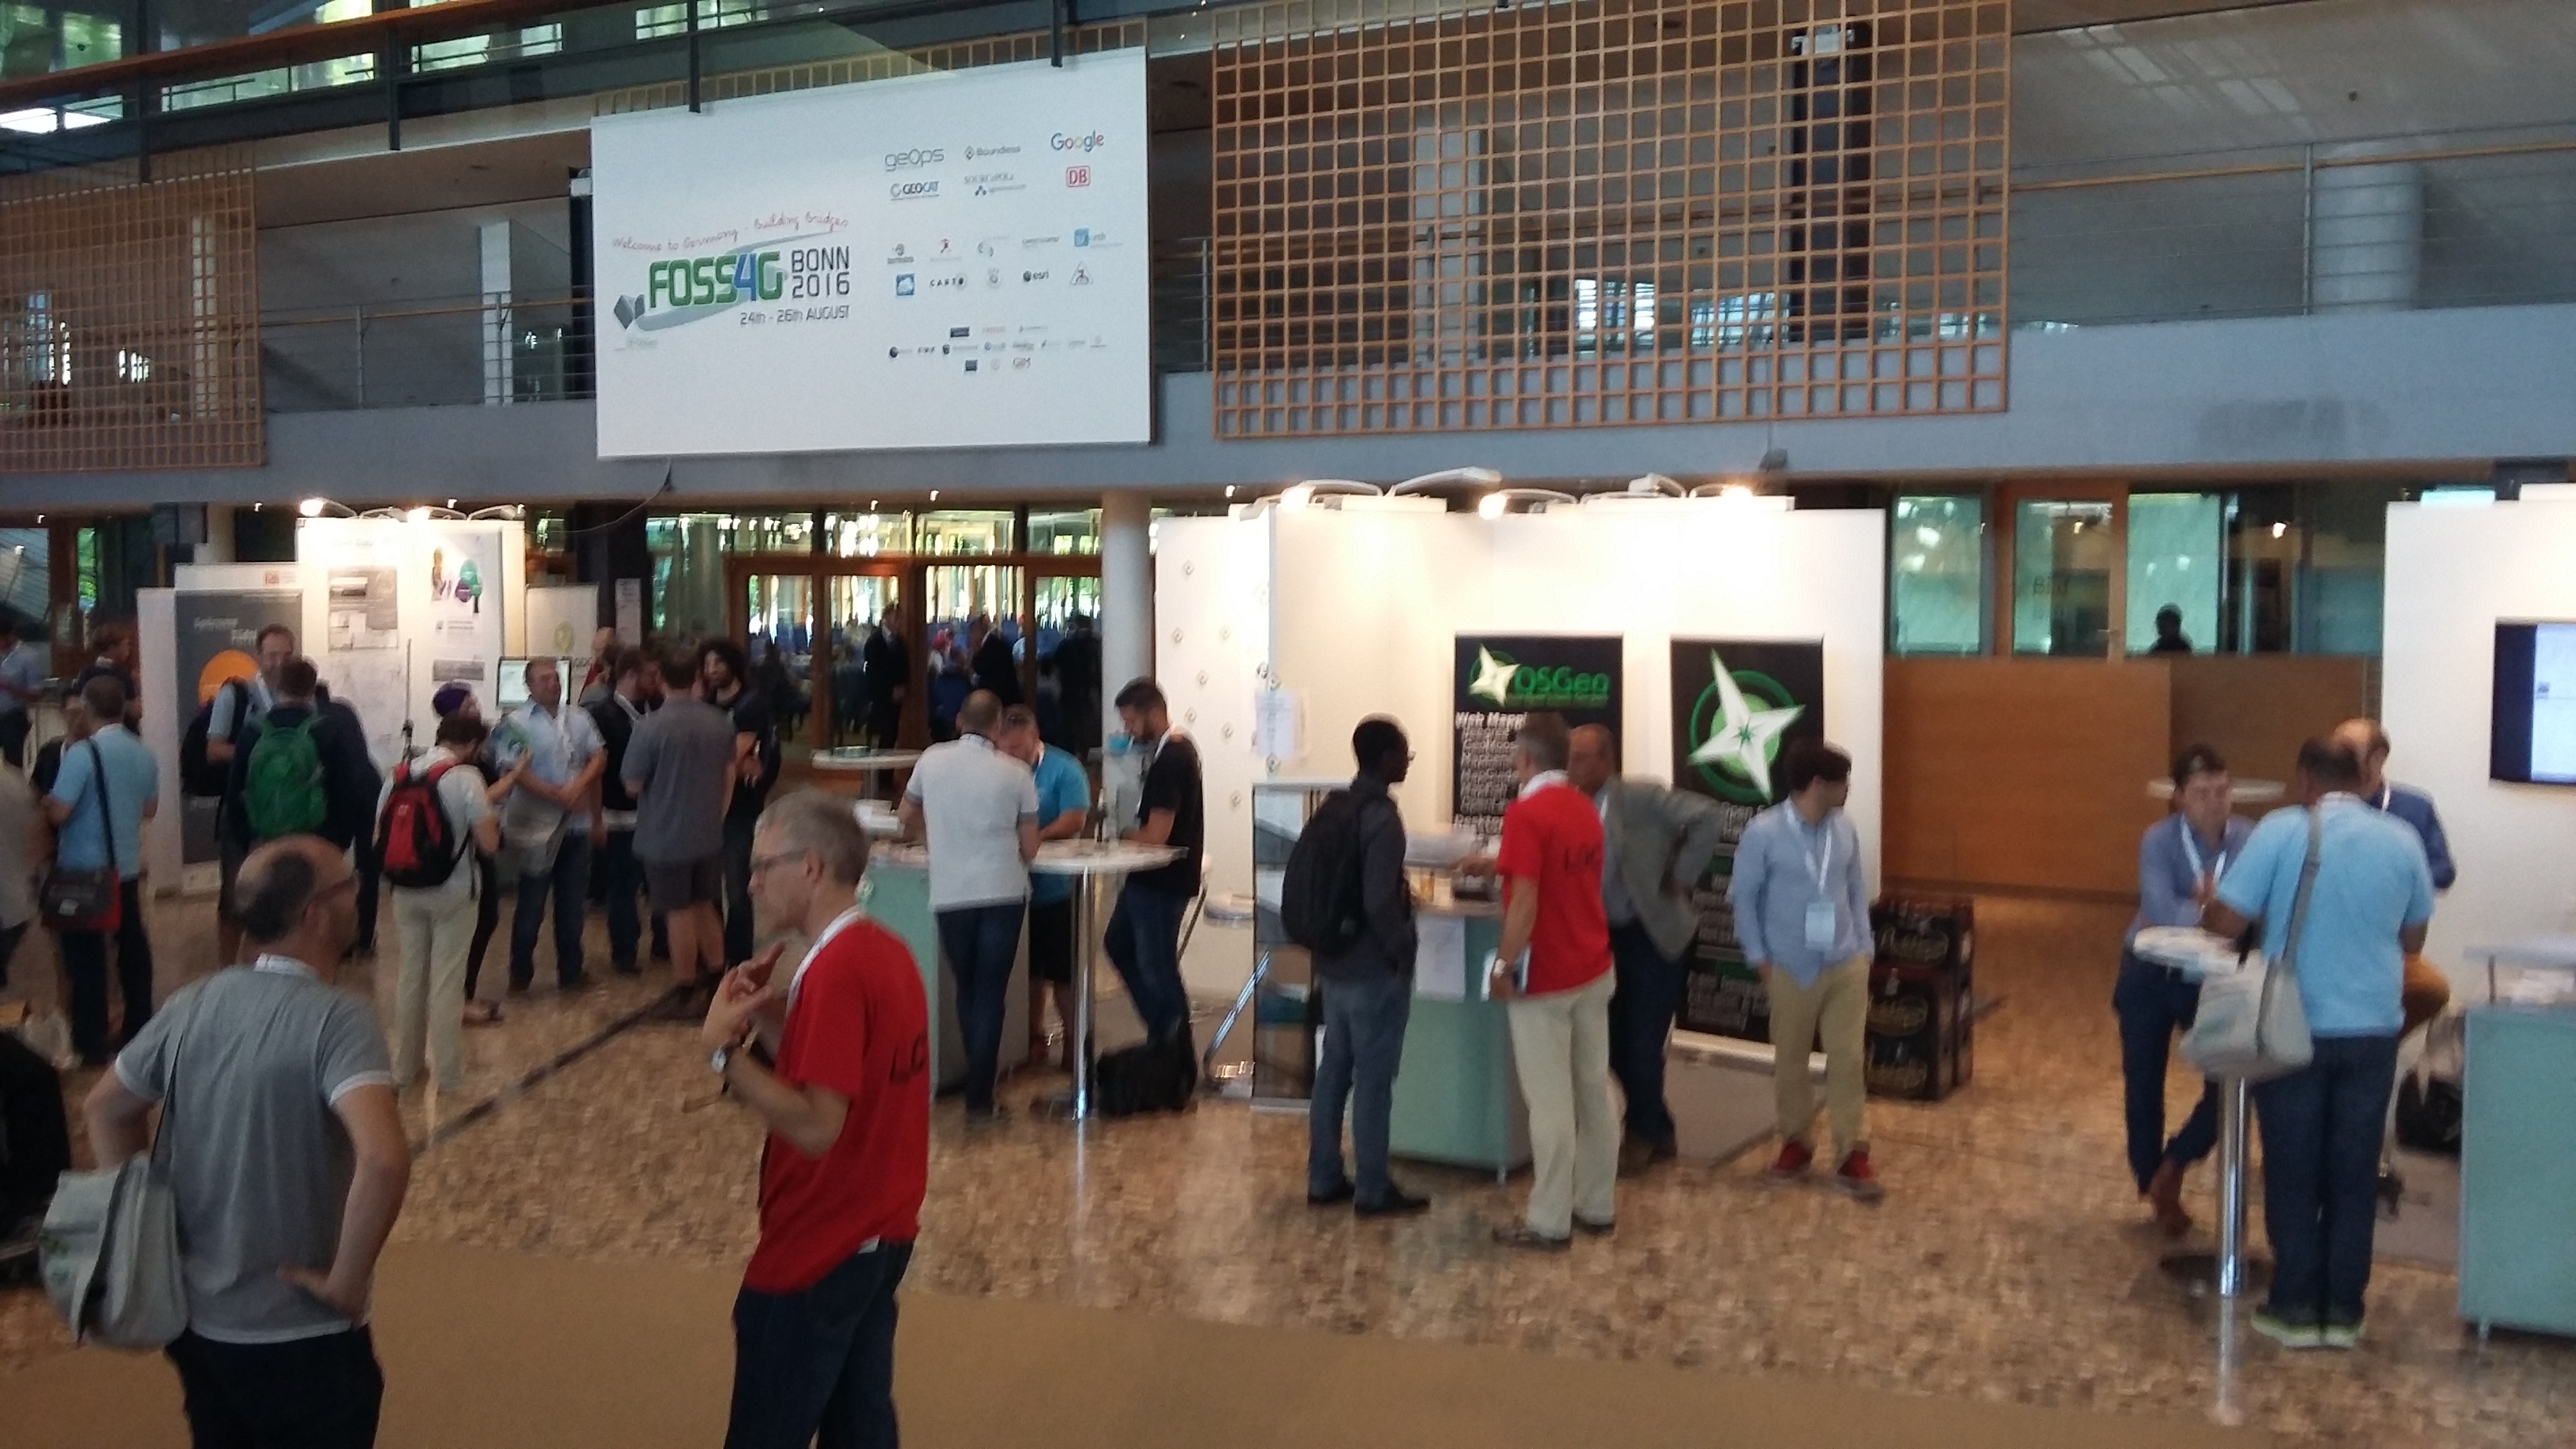 FOSS4G 2016 OSGeo Booth Overview Venue.jpg